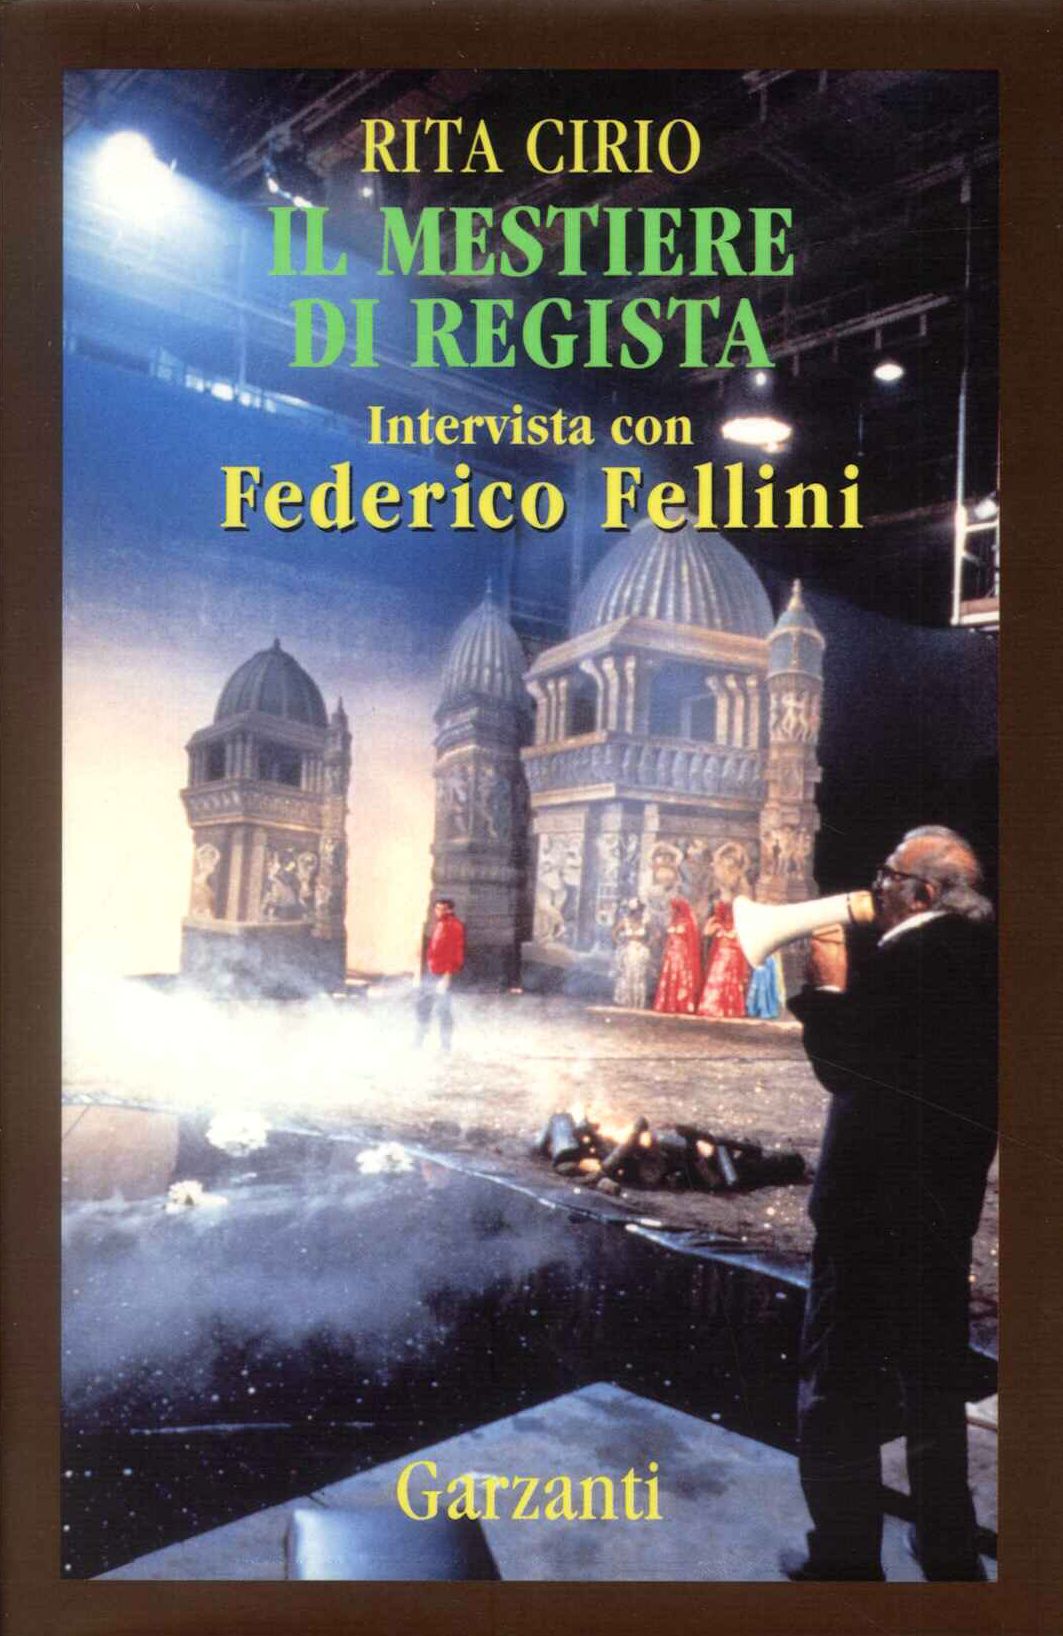 Il Mestiere di regista intervista con Federico Fellini